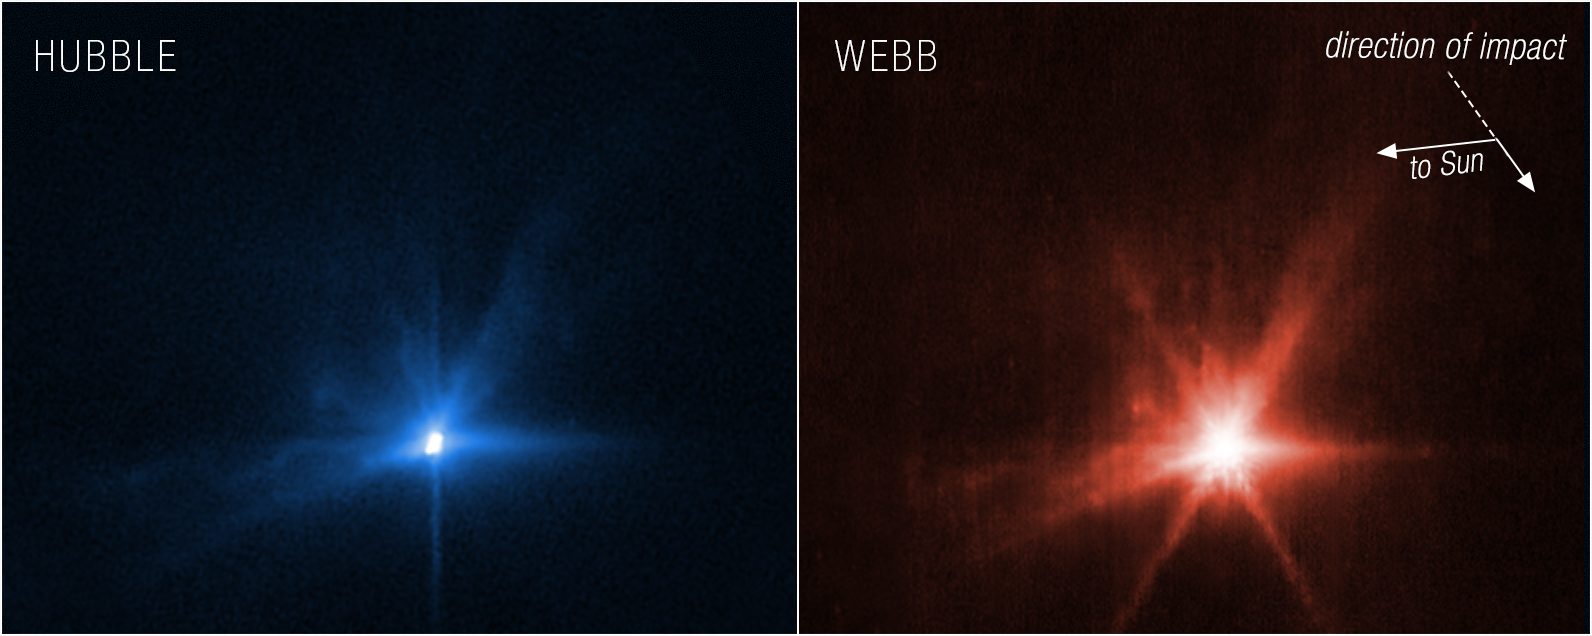 A James Webb és a Hubble is megmutatta, hogy látta a NASA szondájának kisbolygóba csapódását